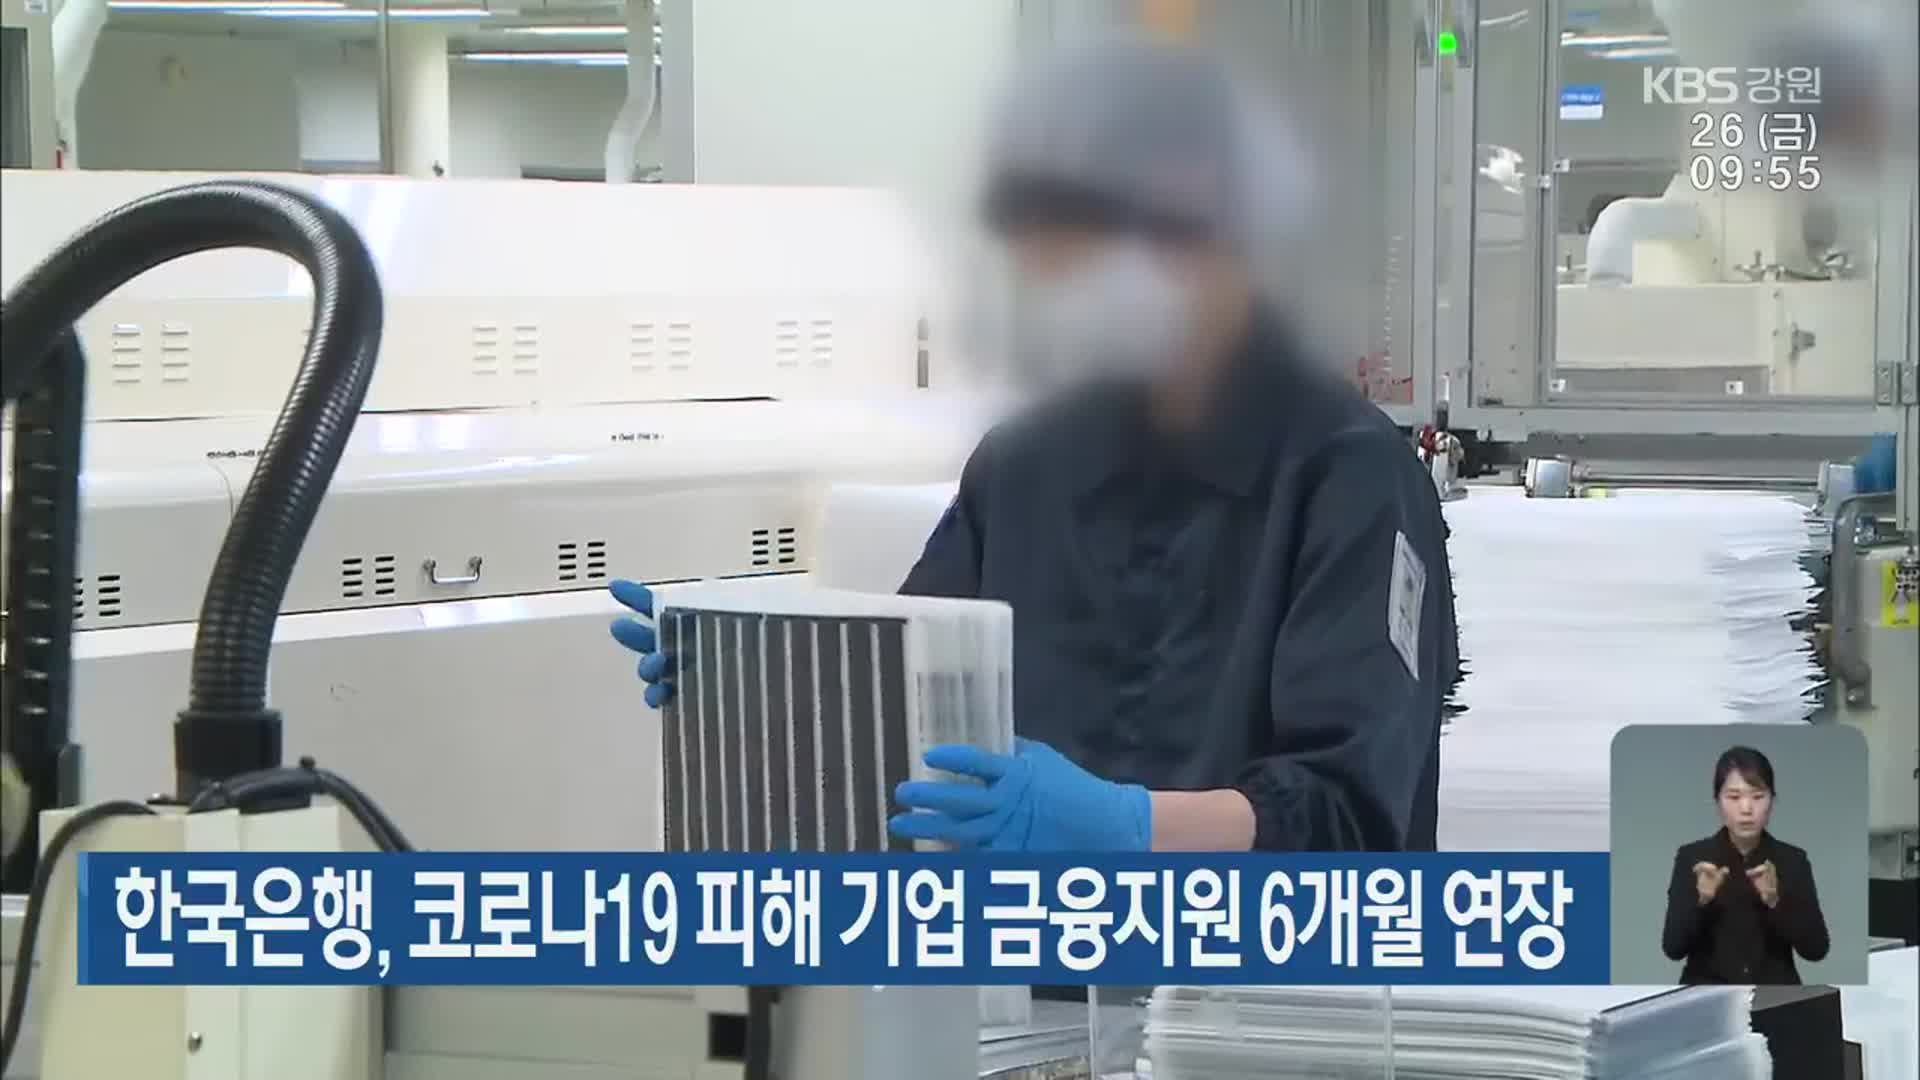 한국은행, 코로나19 피해 기업 금융지원 6개월 연장